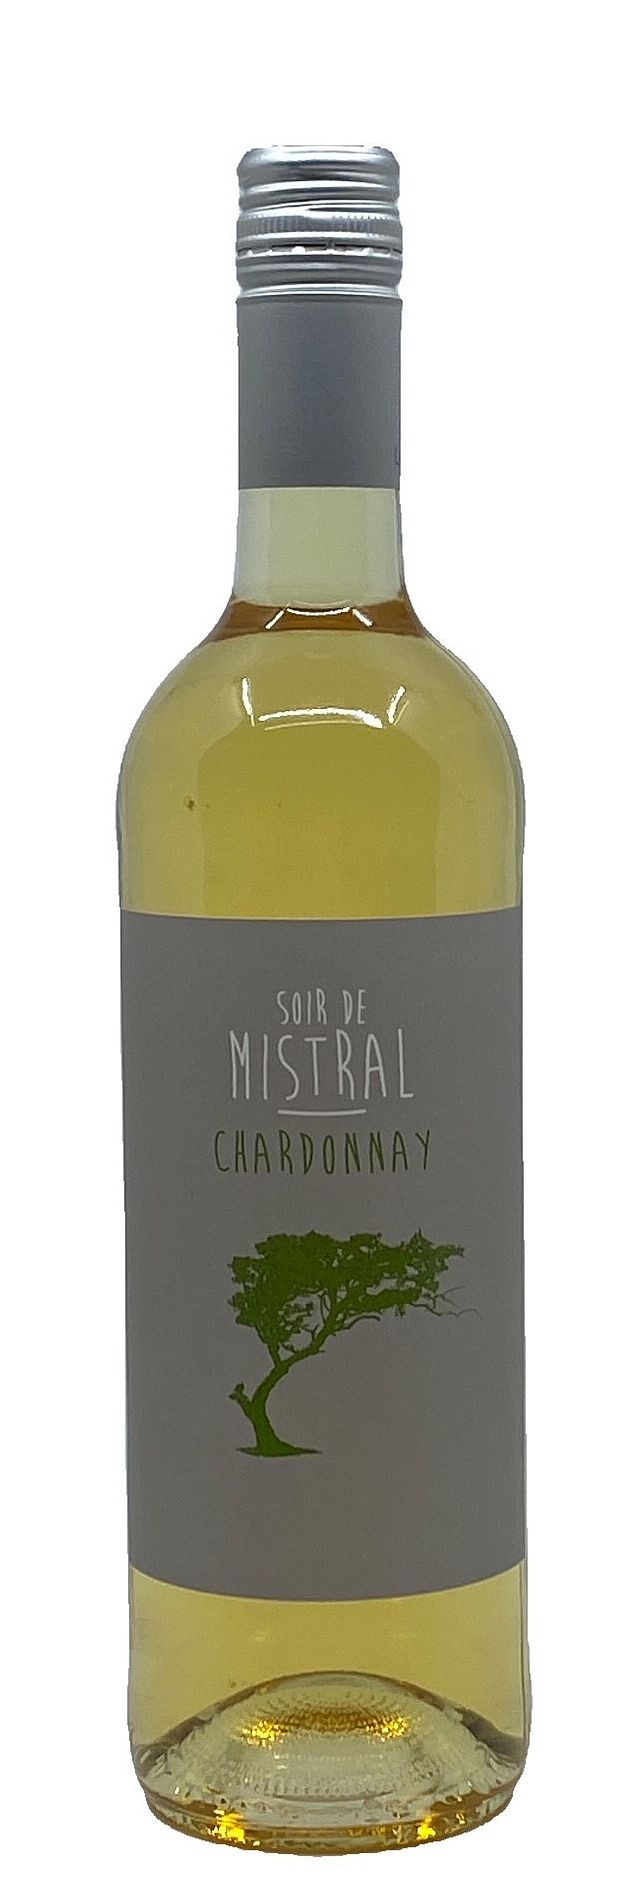 Chardonnay Soir de Mistral Pays d'Oc 2019